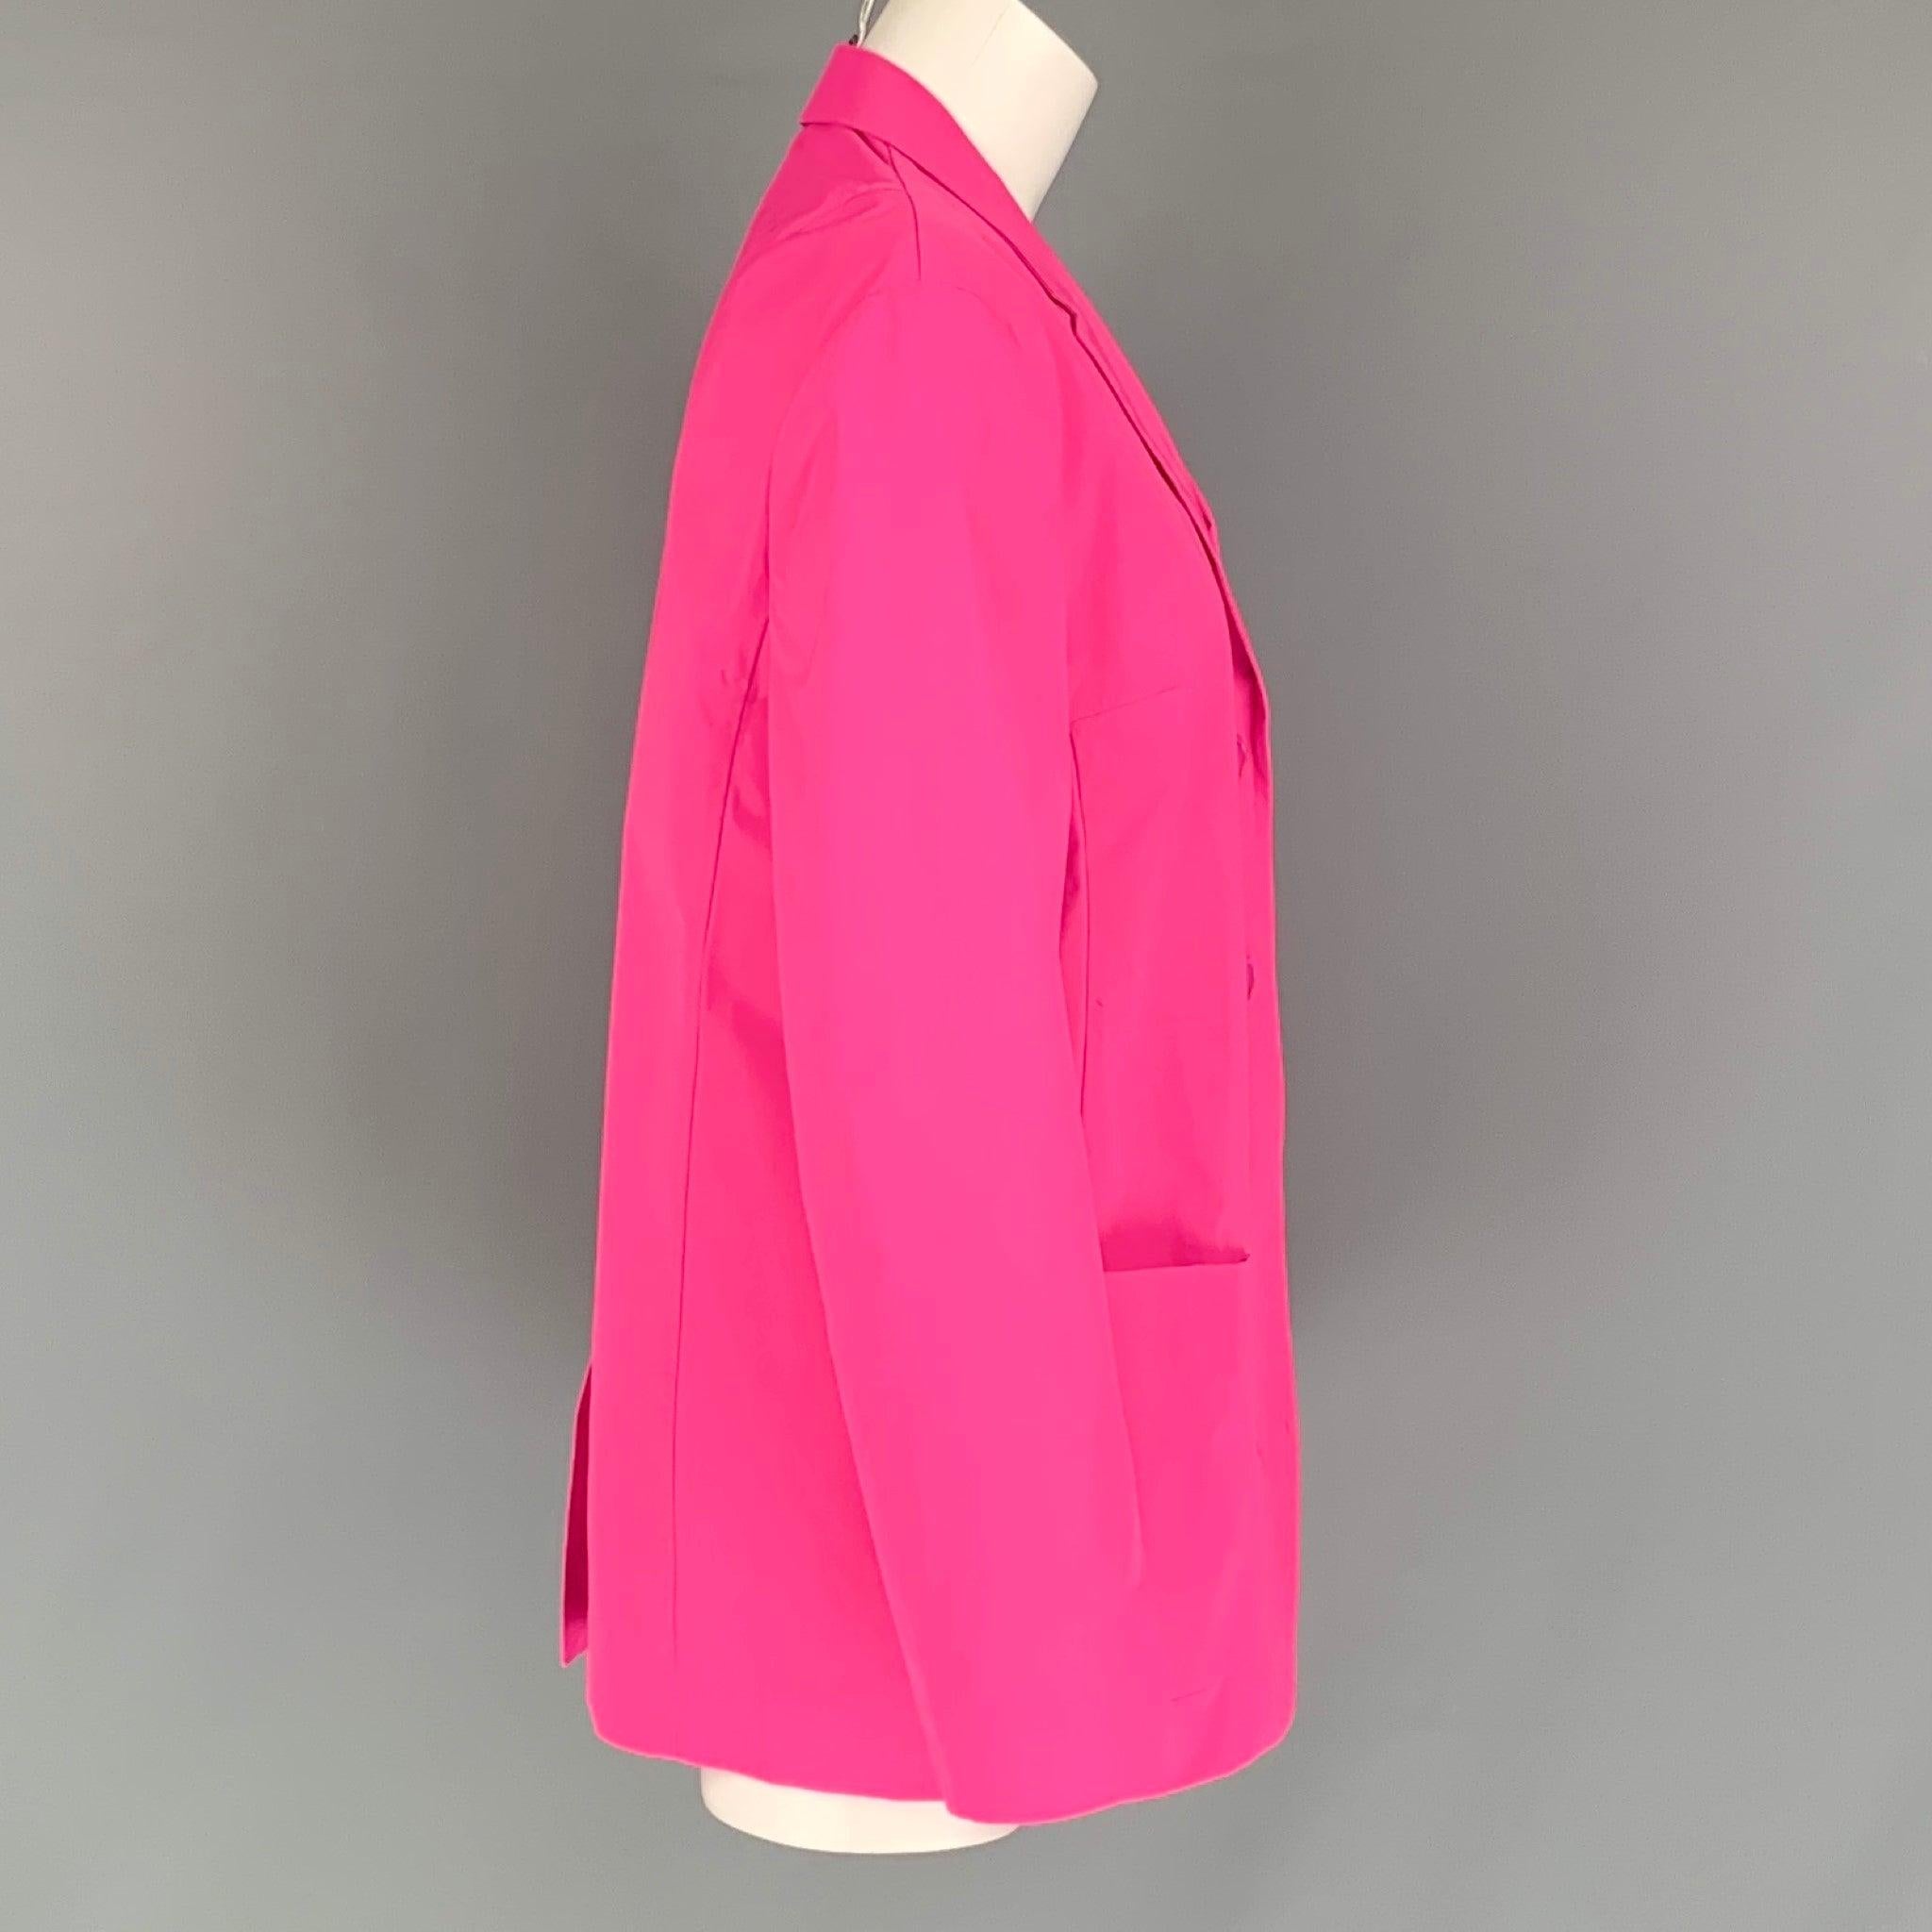 JIL SANDER Blazer aus rosafarbenem Polyester mit eingekerbtem Revers, aufgesetzten Taschen, einem Schlitz auf der Rückseite und einem doppelten Knopfverschluss. Hergestellt in Italien. Sehr guter gebrauchter Zustand. Mäßige Flecken am Rücken.